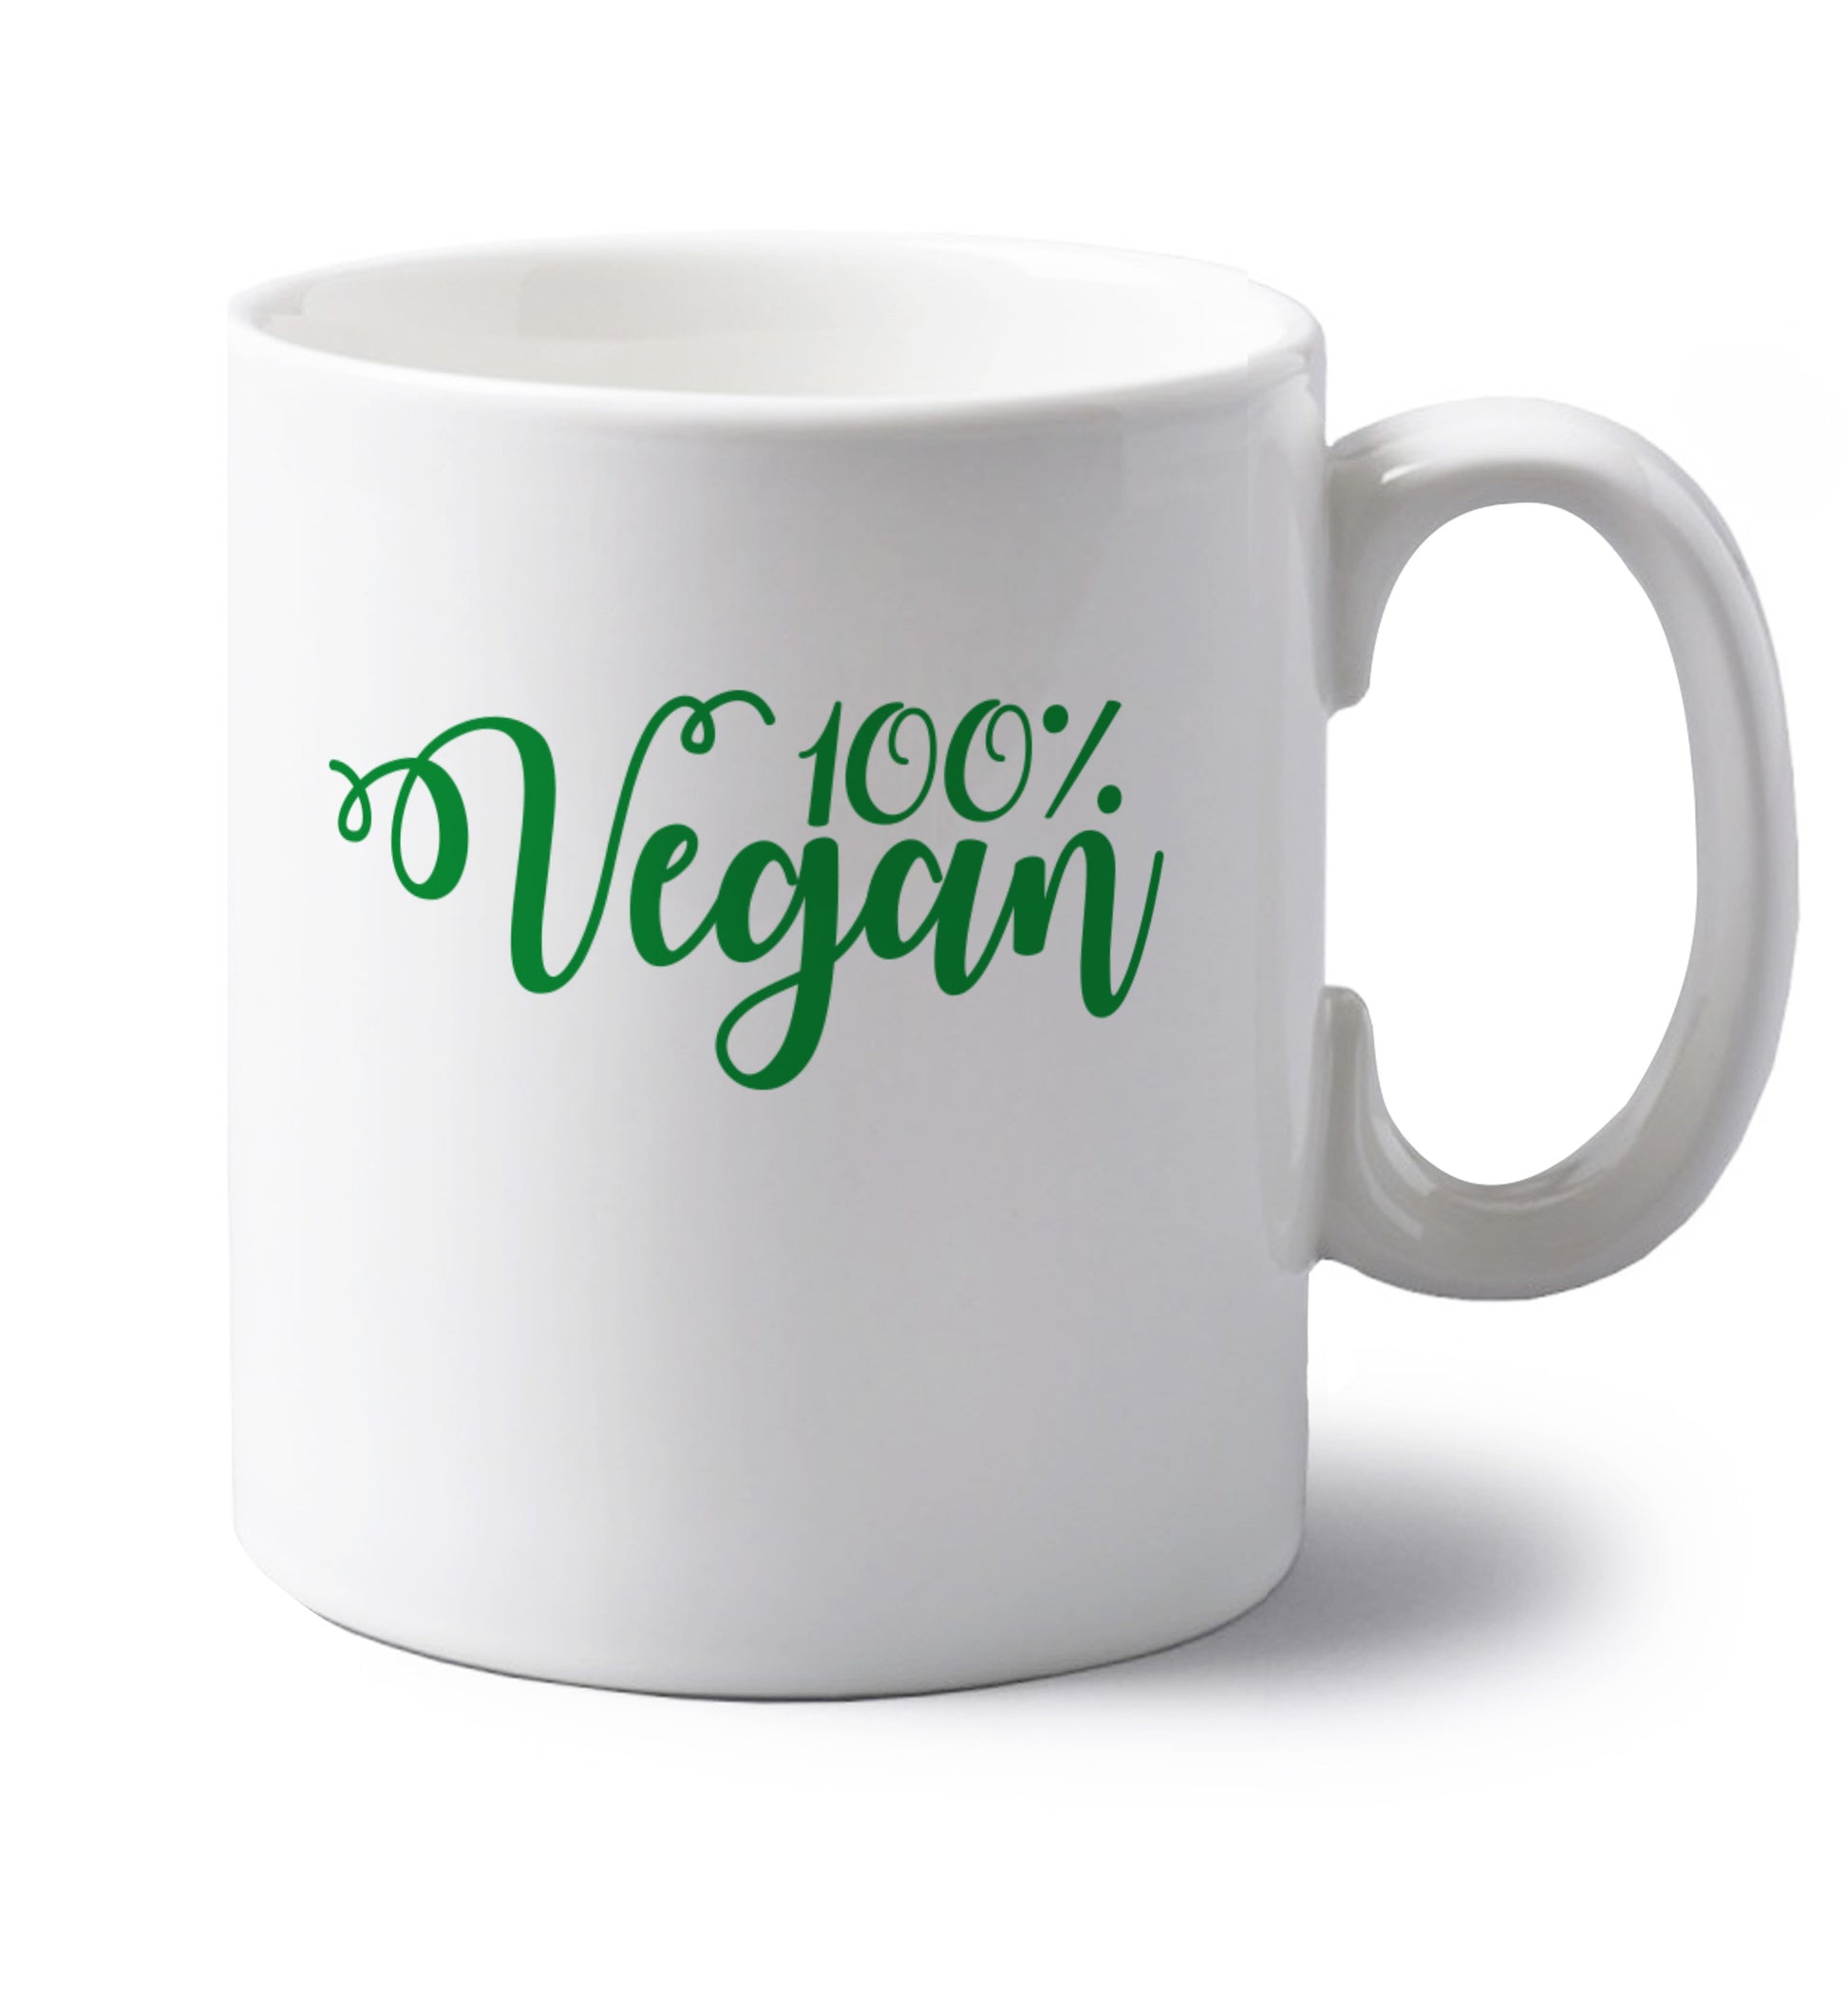 100% Vegan left handed white ceramic mug 